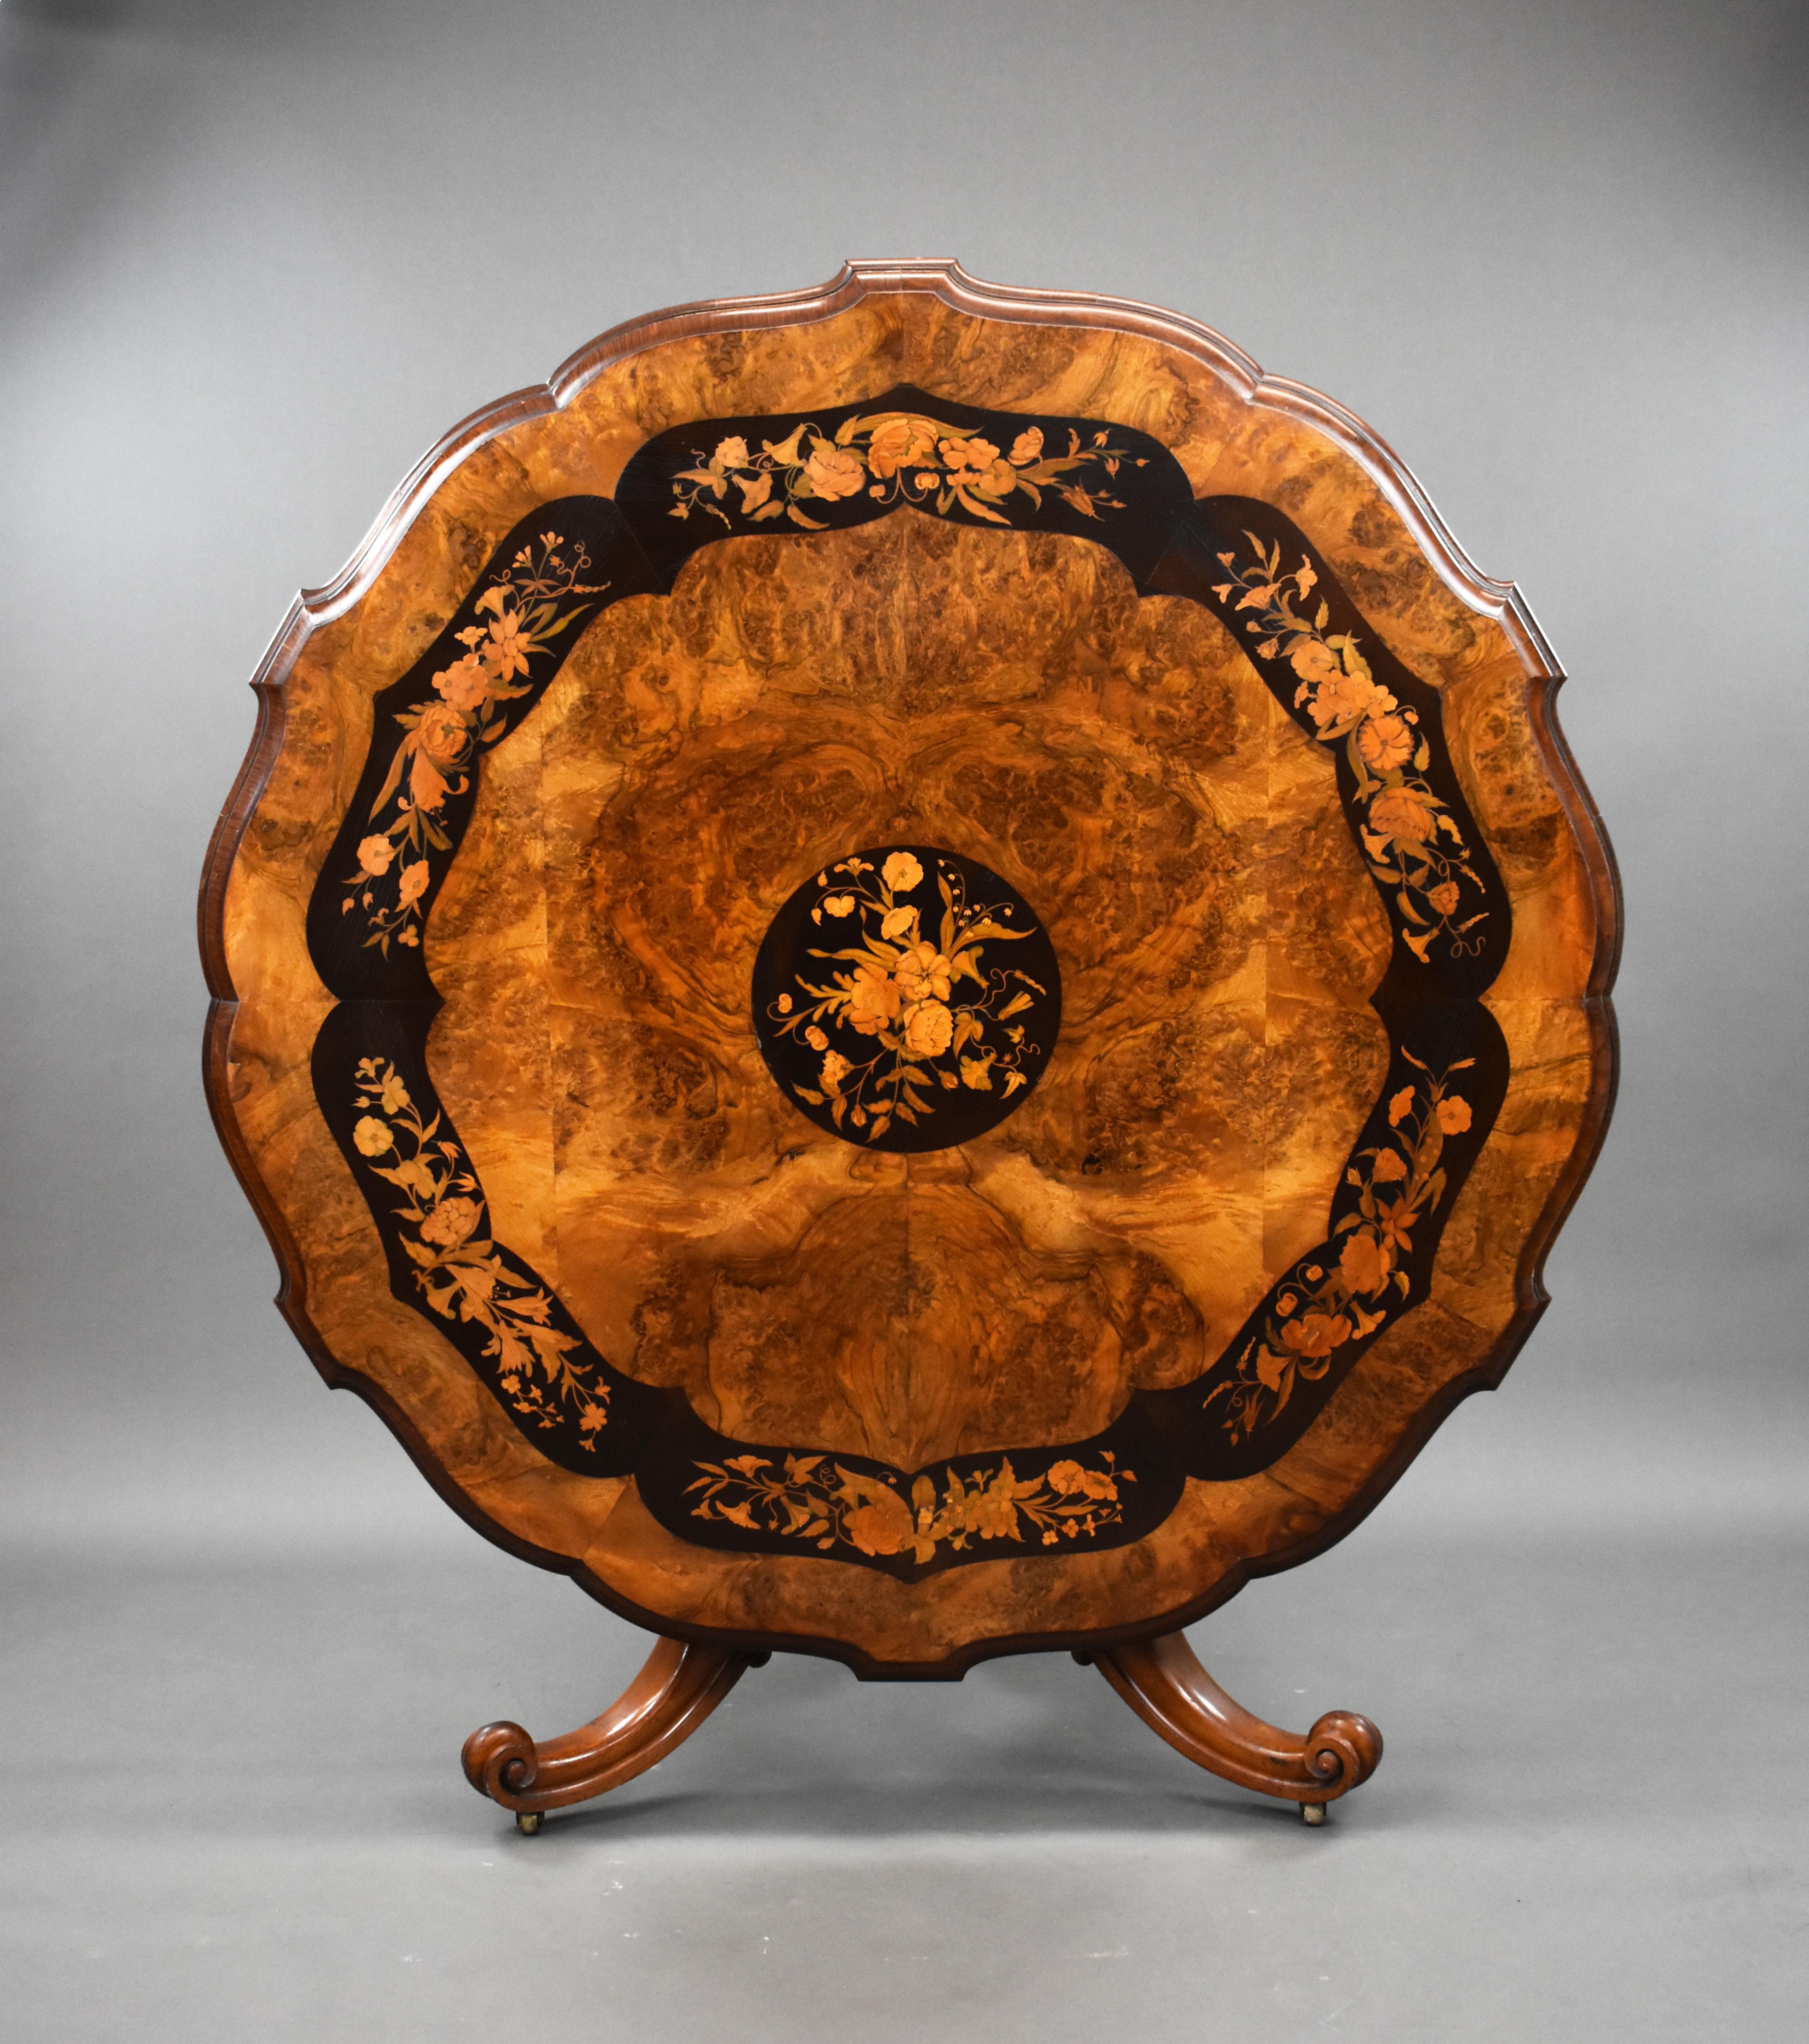 Zum Verkauf steht ein hochwertiger viktorianischer Mitteltisch aus Wurzelnuss und Intarsien. Die Tischplatte ist kunstvoll geformt und mit sehr feinen floralen Intarsien verziert. Dieser befindet sich auf einem Sockel mit Intarsien, der auf drei